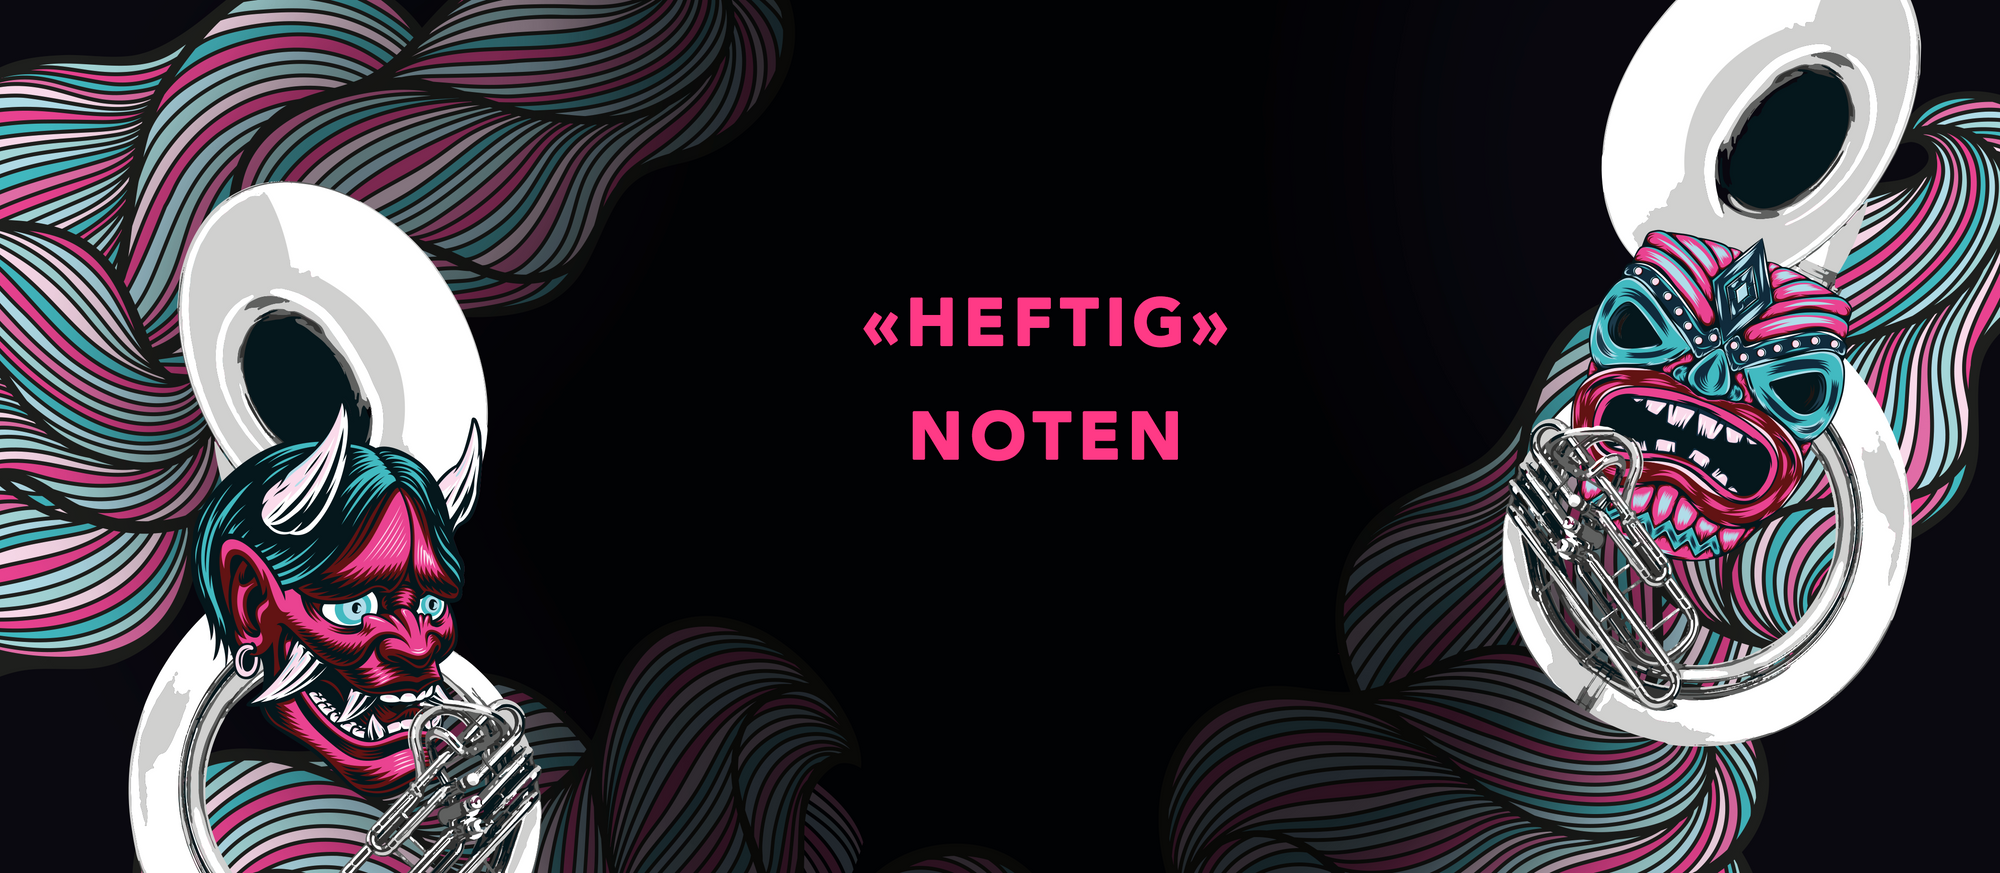 HEFTIG (Noten)